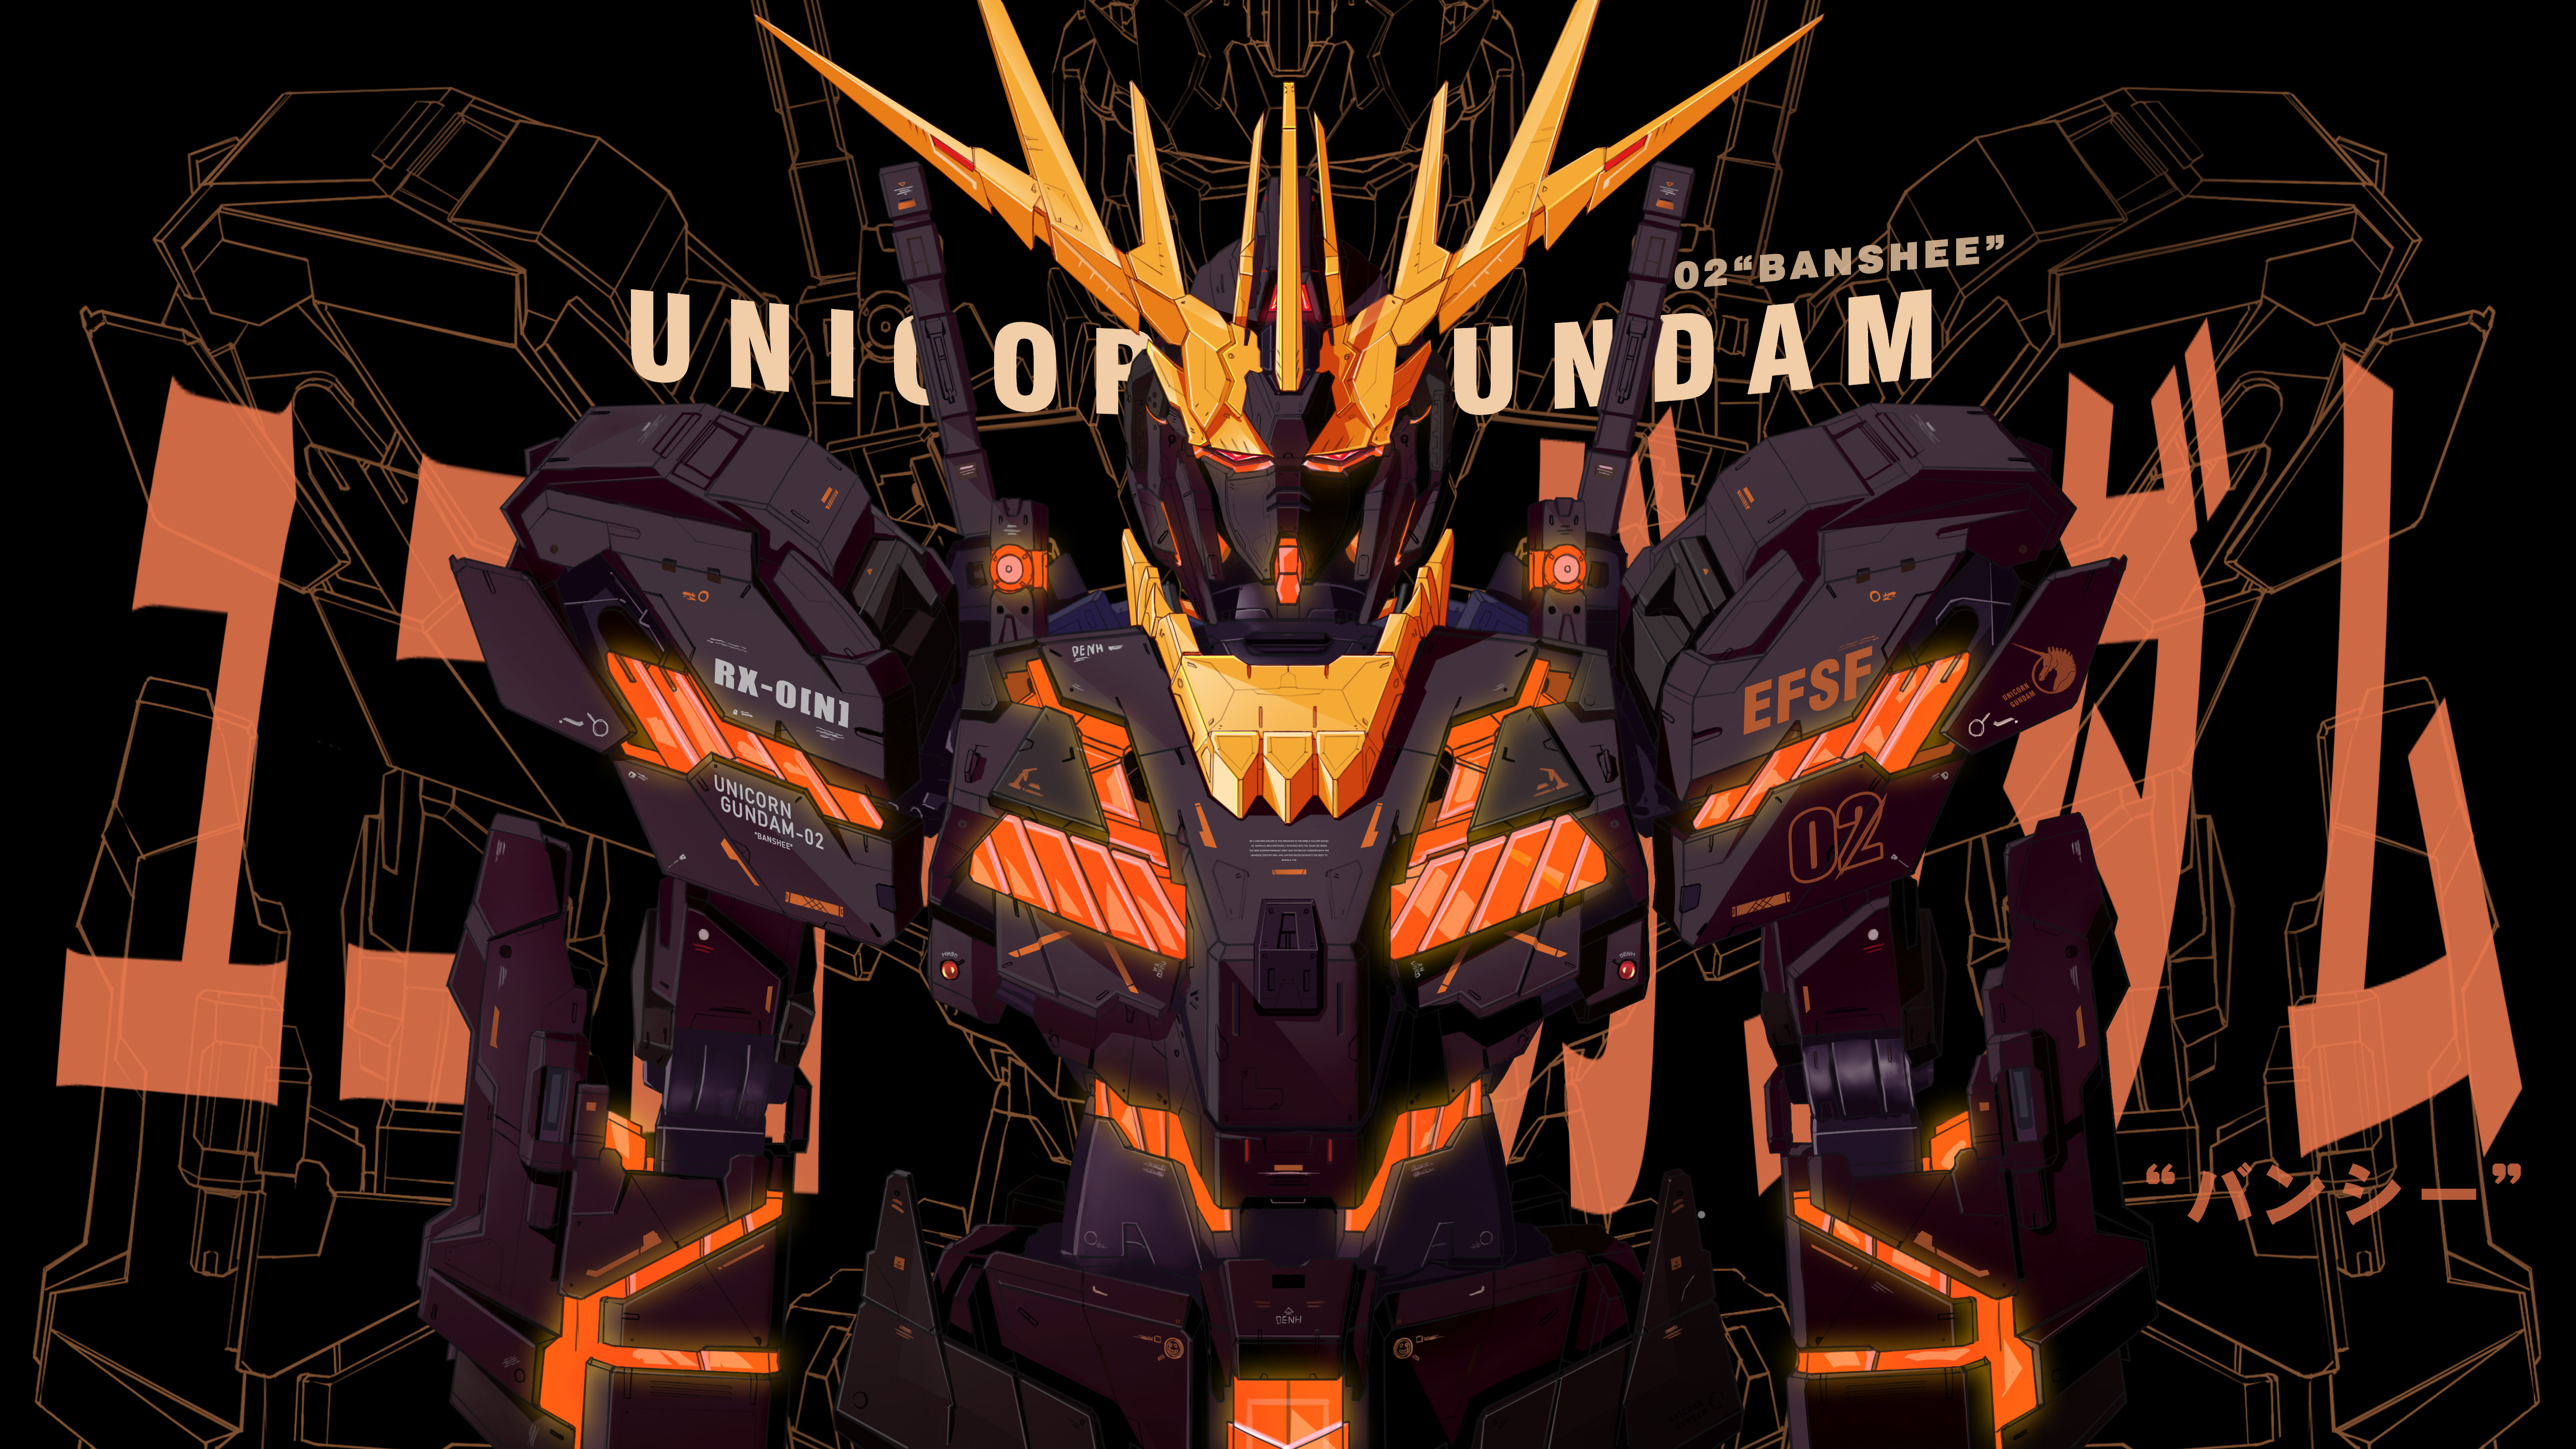 Hình nền Gundam Unicorn đầy sức mạnh và thiết kế đẹp mắt sẽ khiến bạn choáng ngợp. Hãy ngắm nhìn hình nền này để cảm nhận sự hoành tráng của Gundam Unicorn.